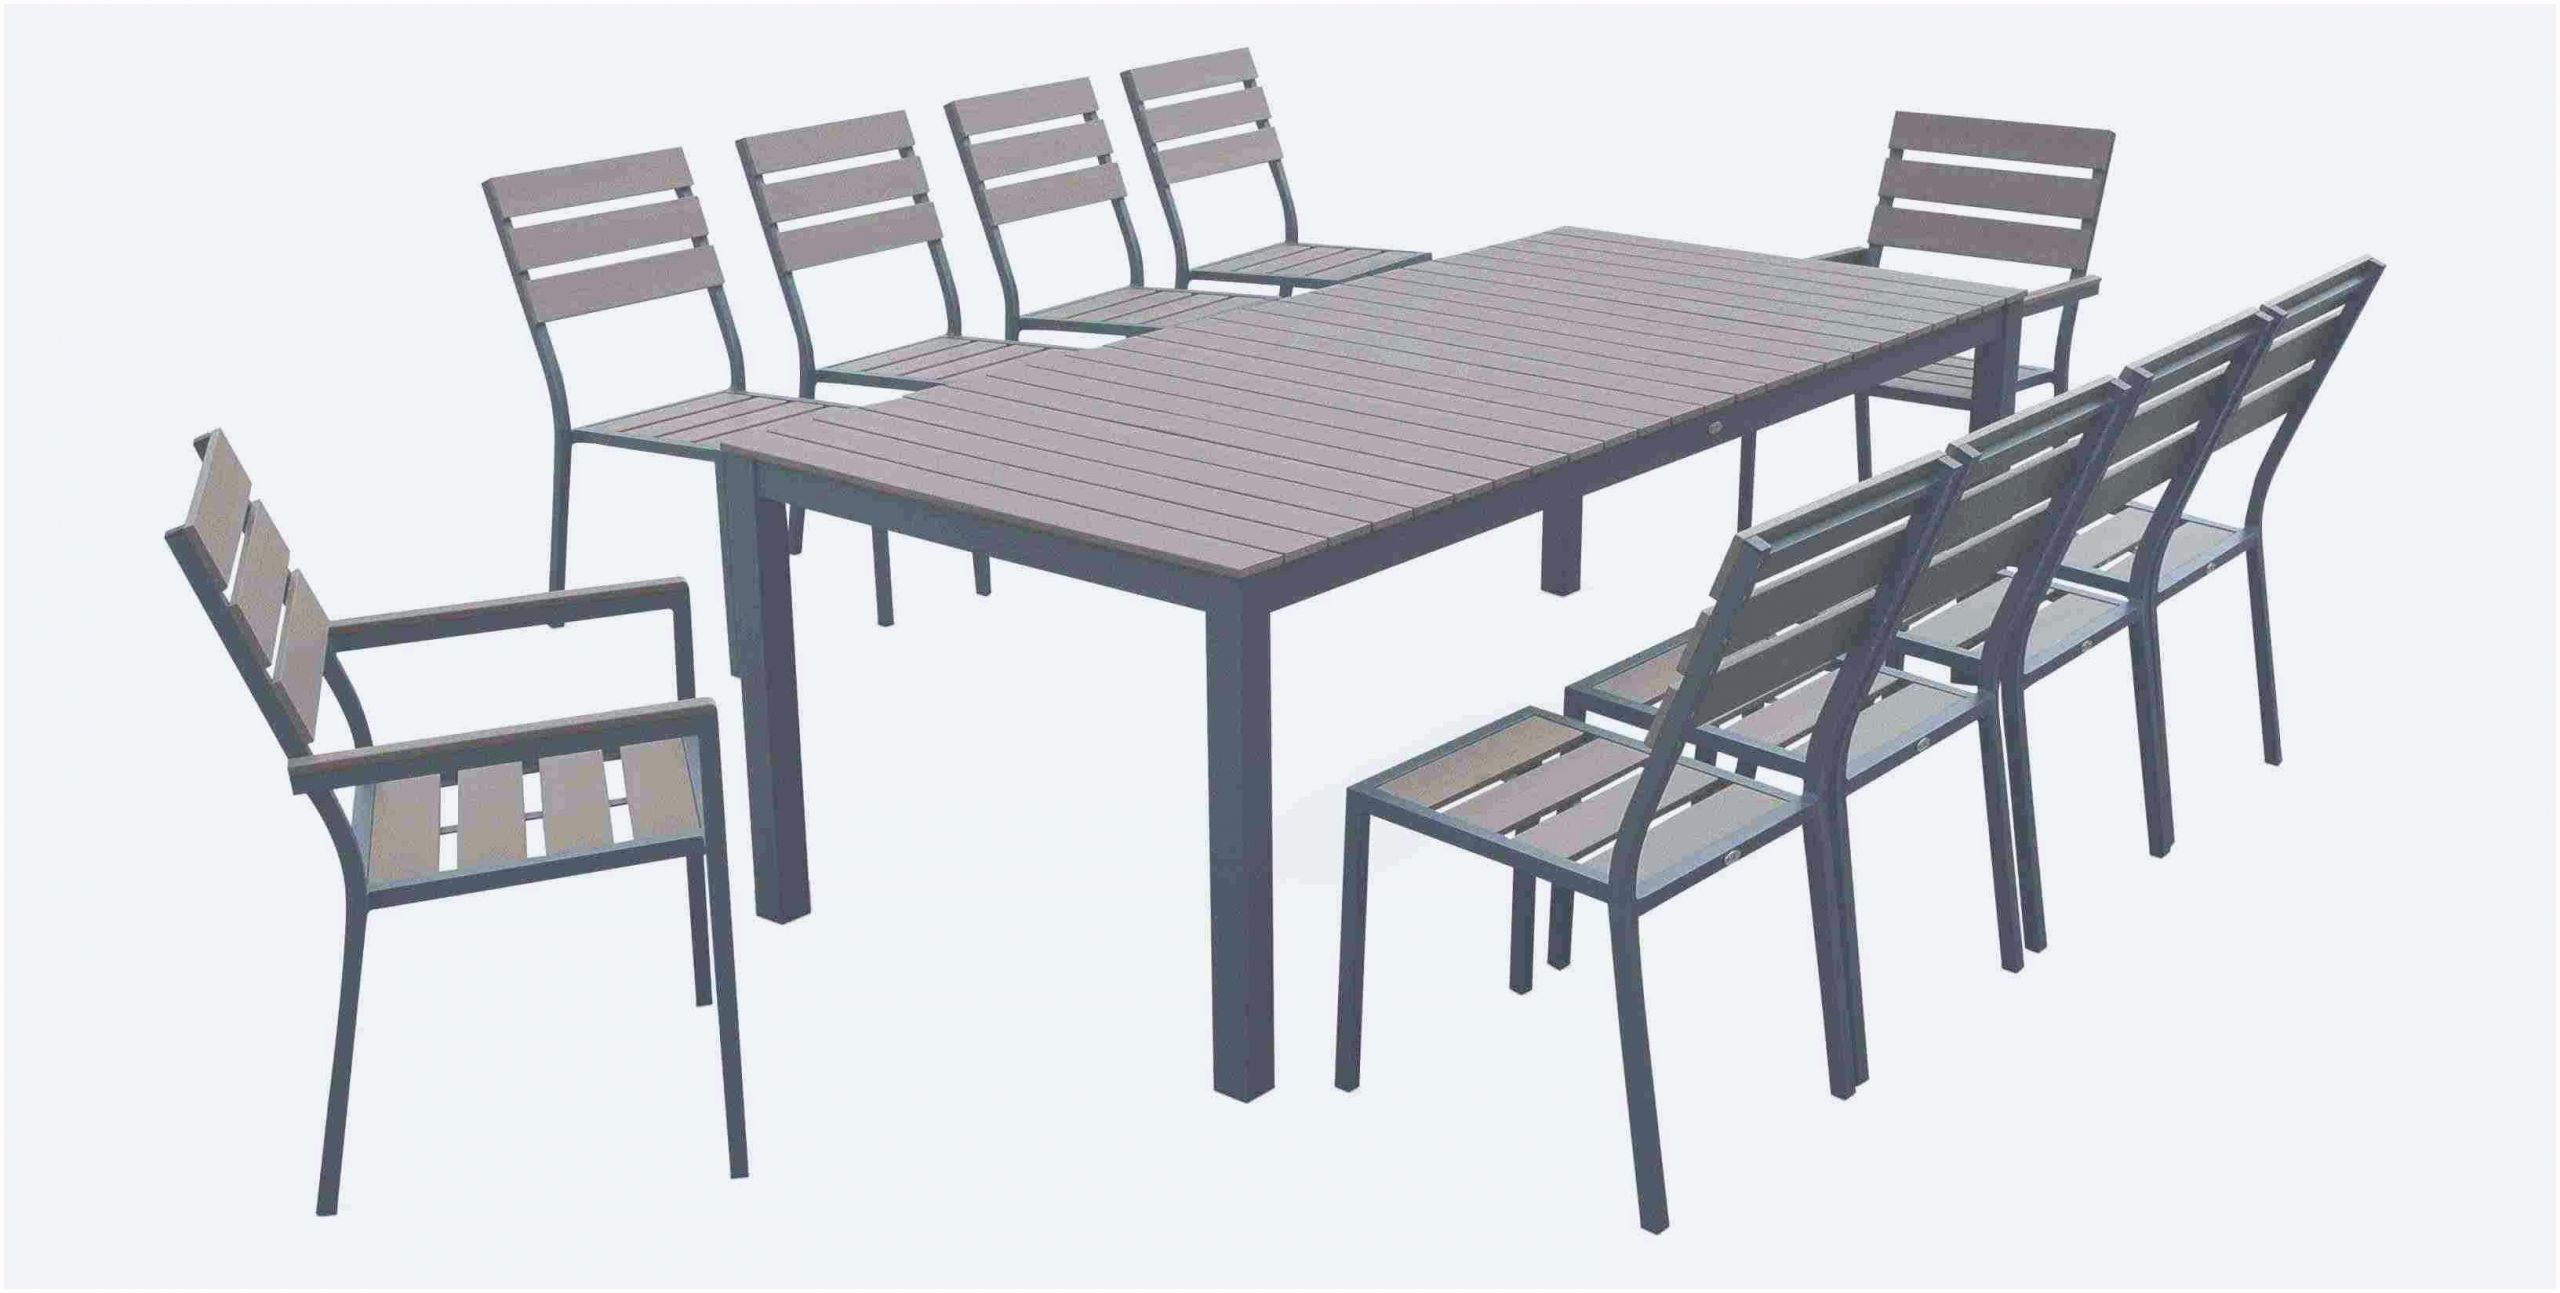 table contemporaine bois et metal photo de luxe table cuisine bois massif frais fauteuil salon 0d archives of table contemporaine bois et metal